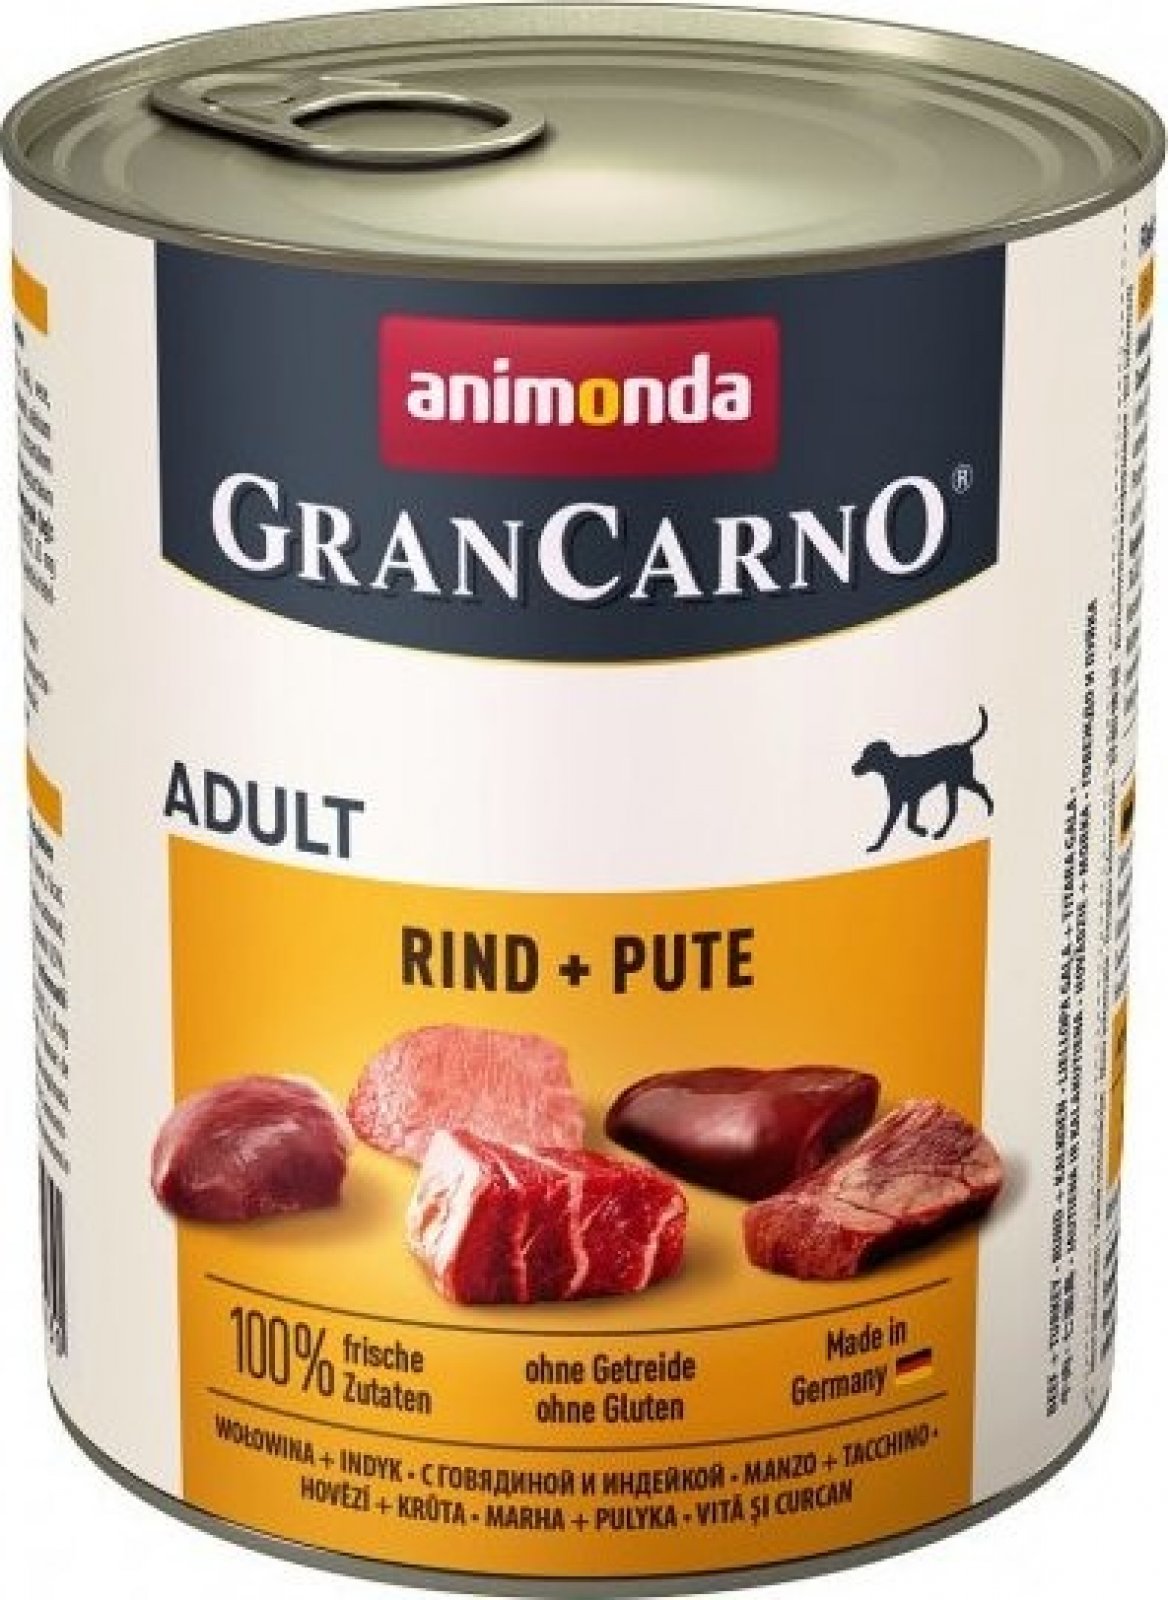 Animonda Gran Carno Adult hovězí & krůtí 800g